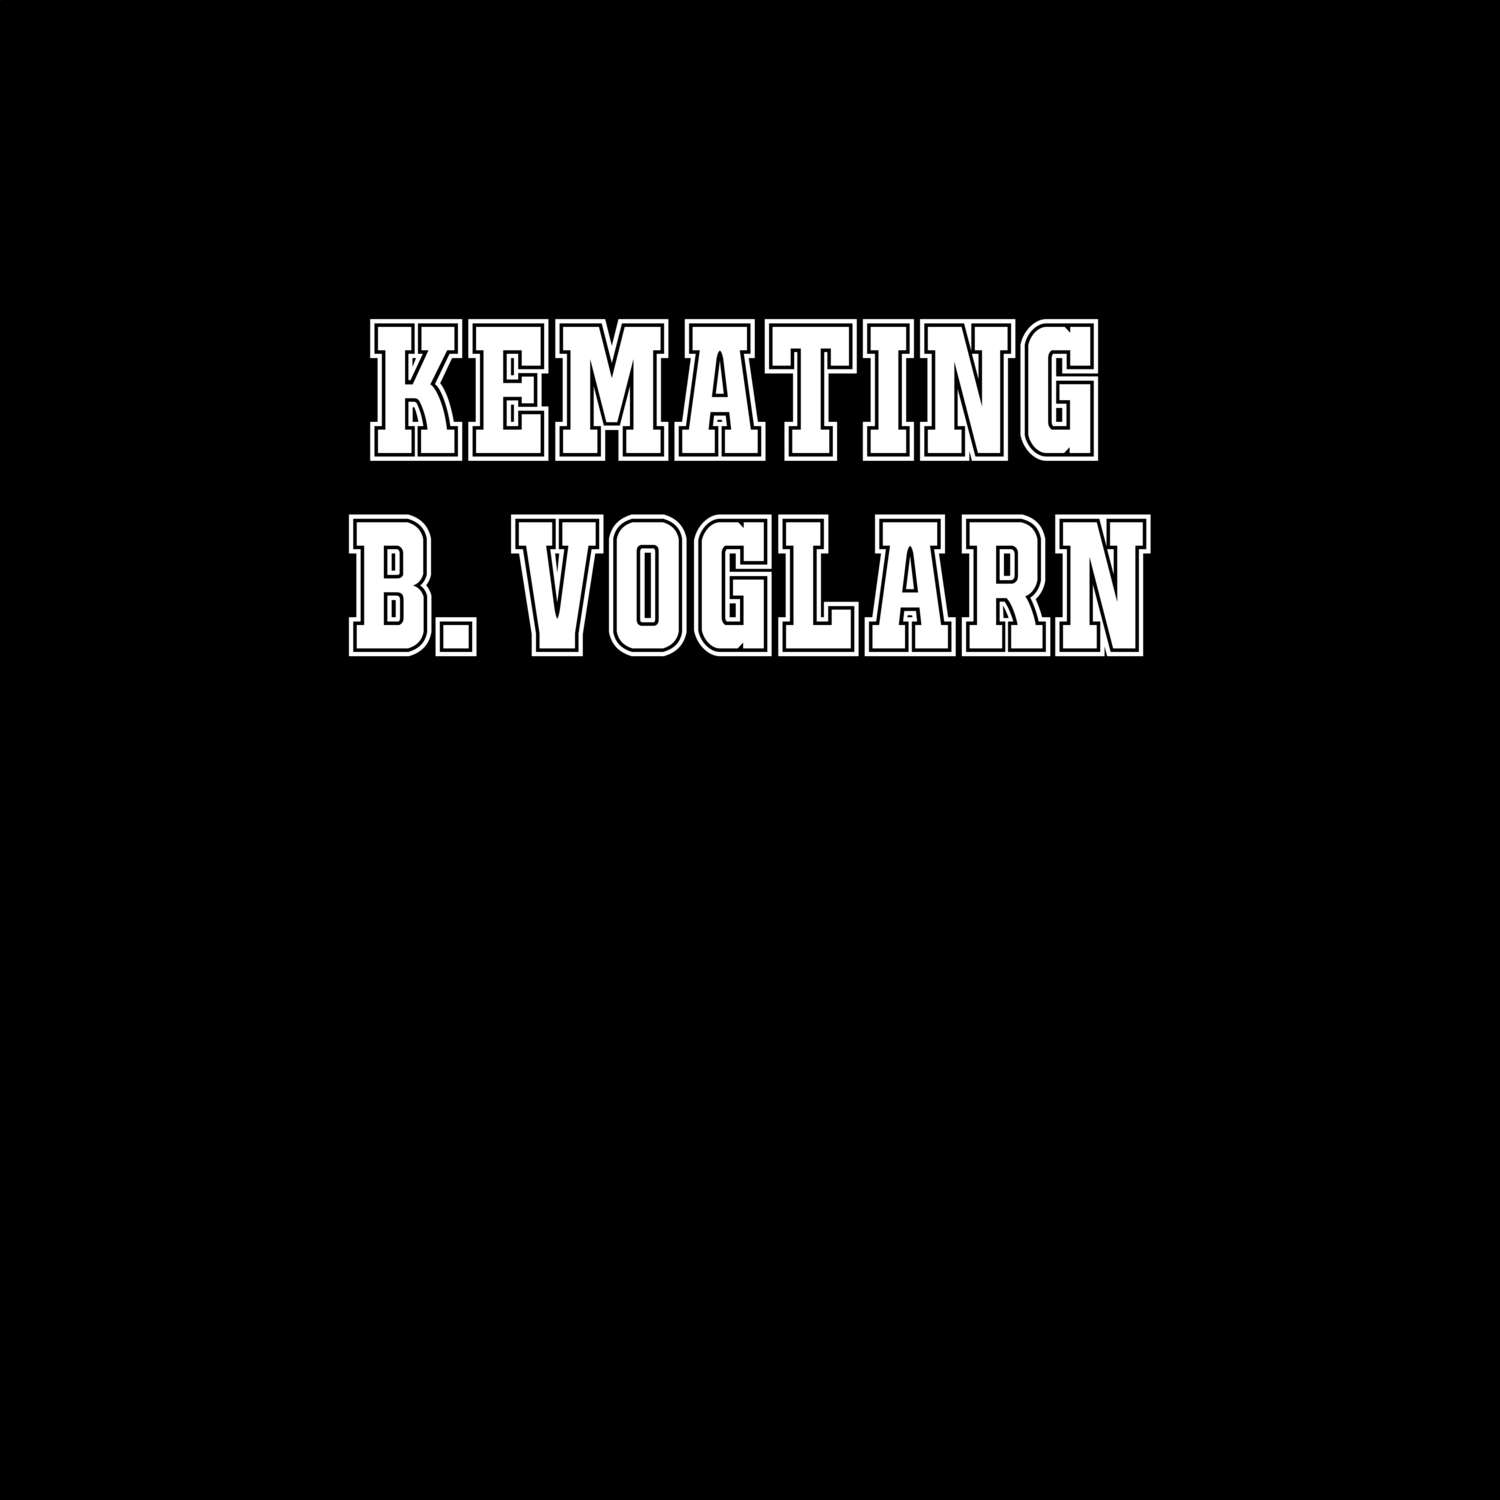 Kemating b. Voglarn T-Shirt »Classic«